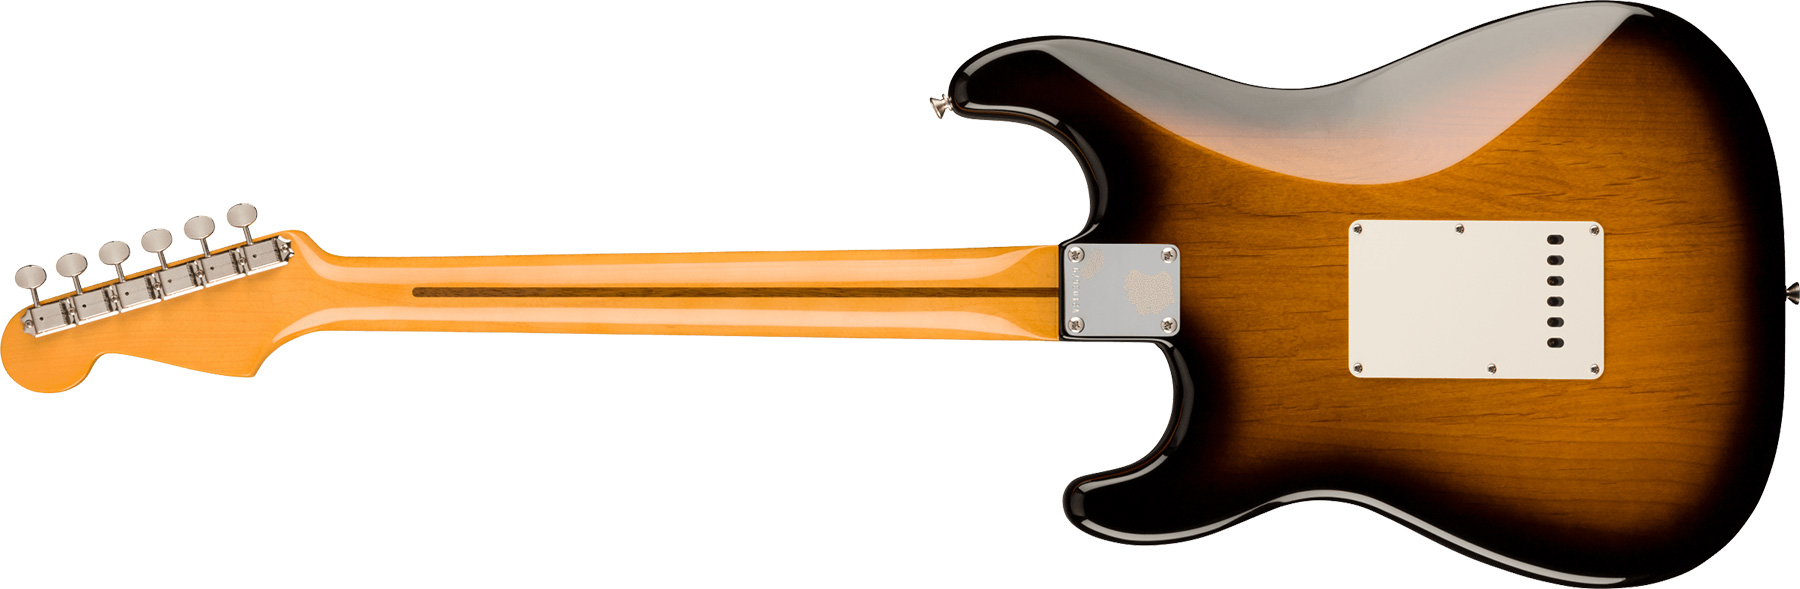 Fender Strat 1957 American Vintage Ii Usa 3s Trem Mn - 2-color Sunburst - Str shape electric guitar - Variation 1